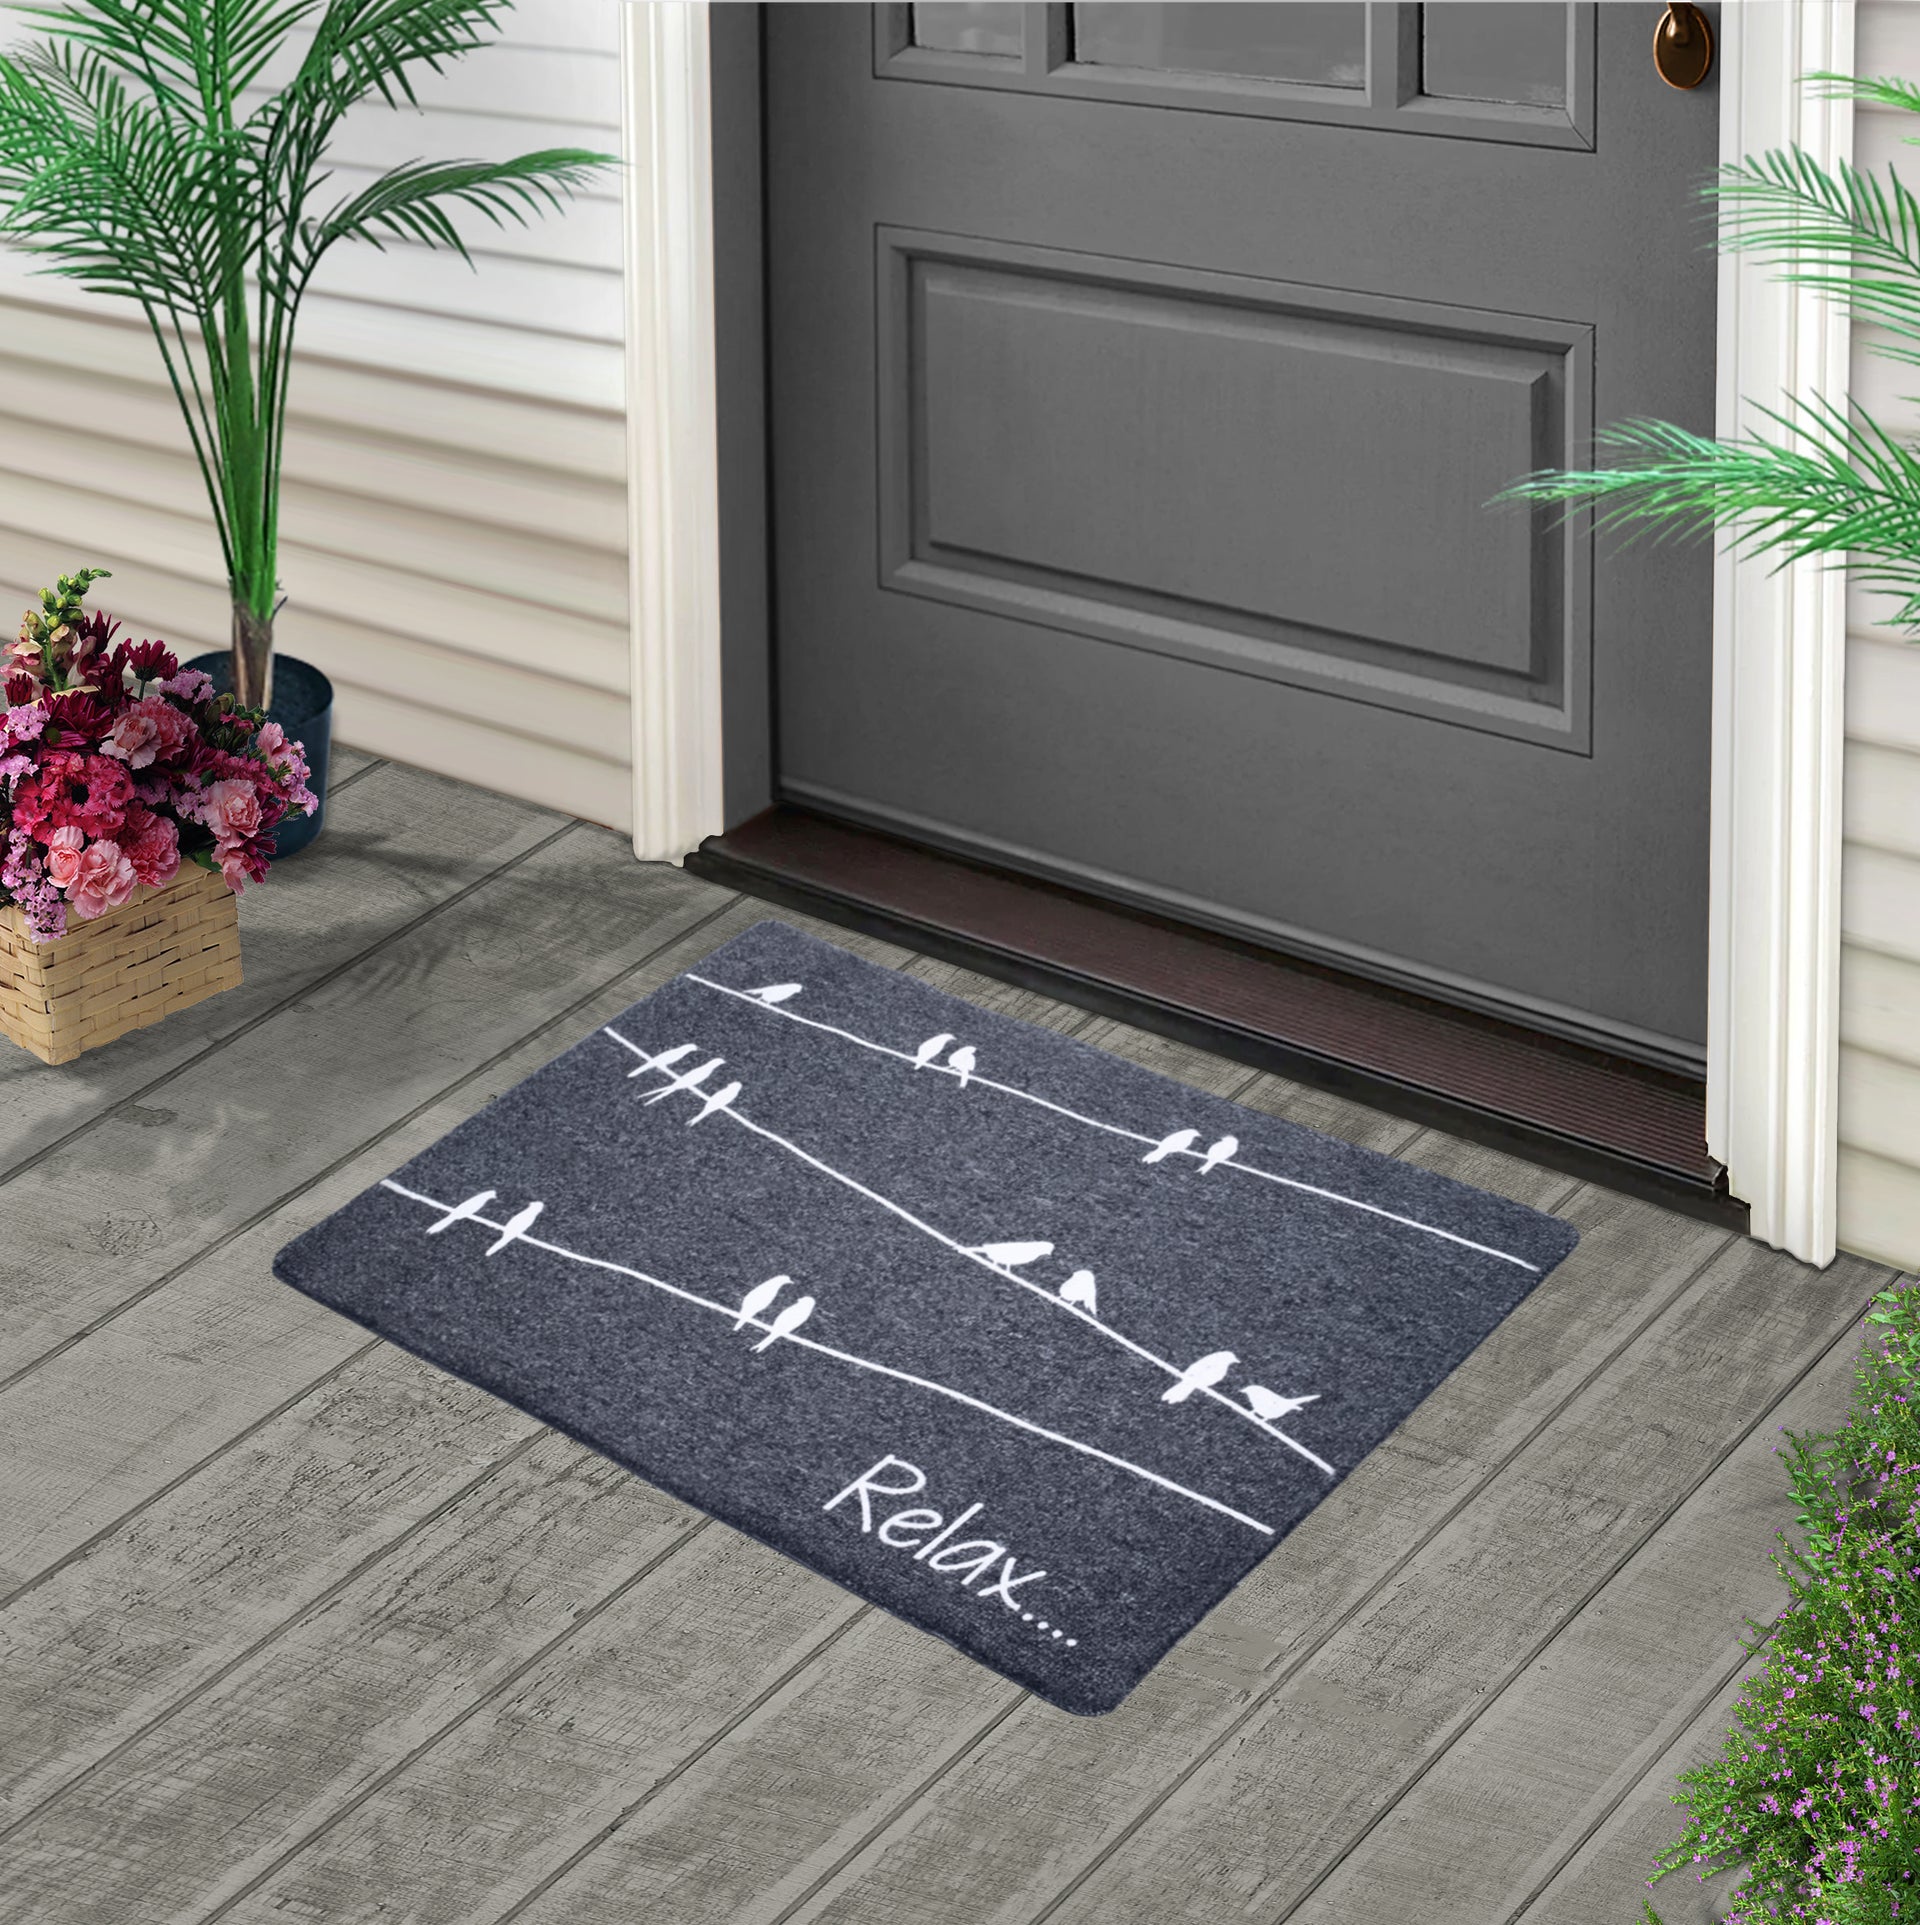 Linka Home 30”x18” Durable Natural Rubber Front Door Mat - Indoor Outdoor  Doormat - Low Profile Waterproof Non Slip Heavy Duty Outdoor Mat for Home